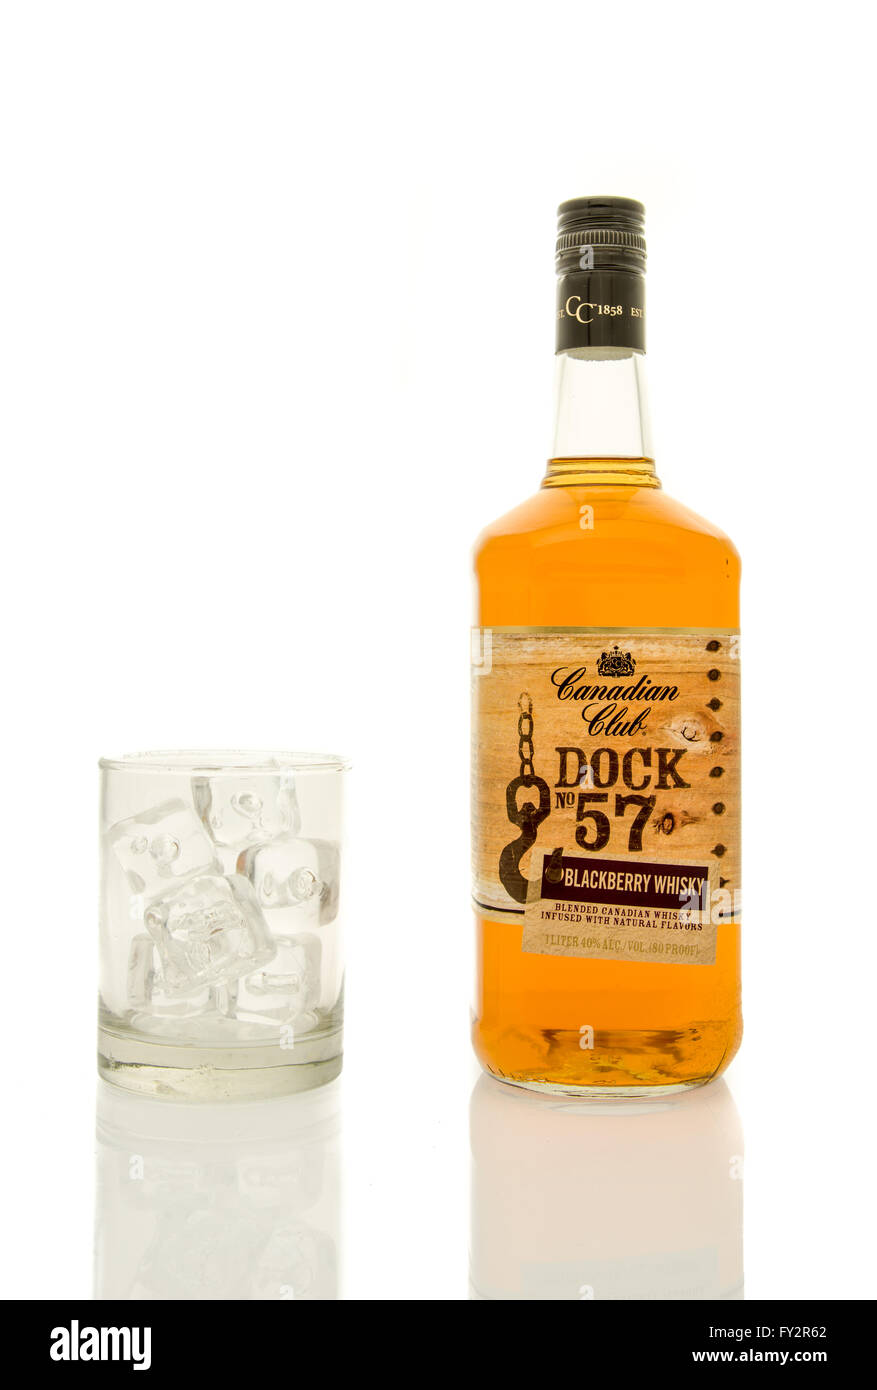 Winneconne, Wisconsin - 19. März 2016: eine Flasche Whisky Canadian Club  Dock 57 mit einem Glas aus Eis Stockfotografie - Alamy